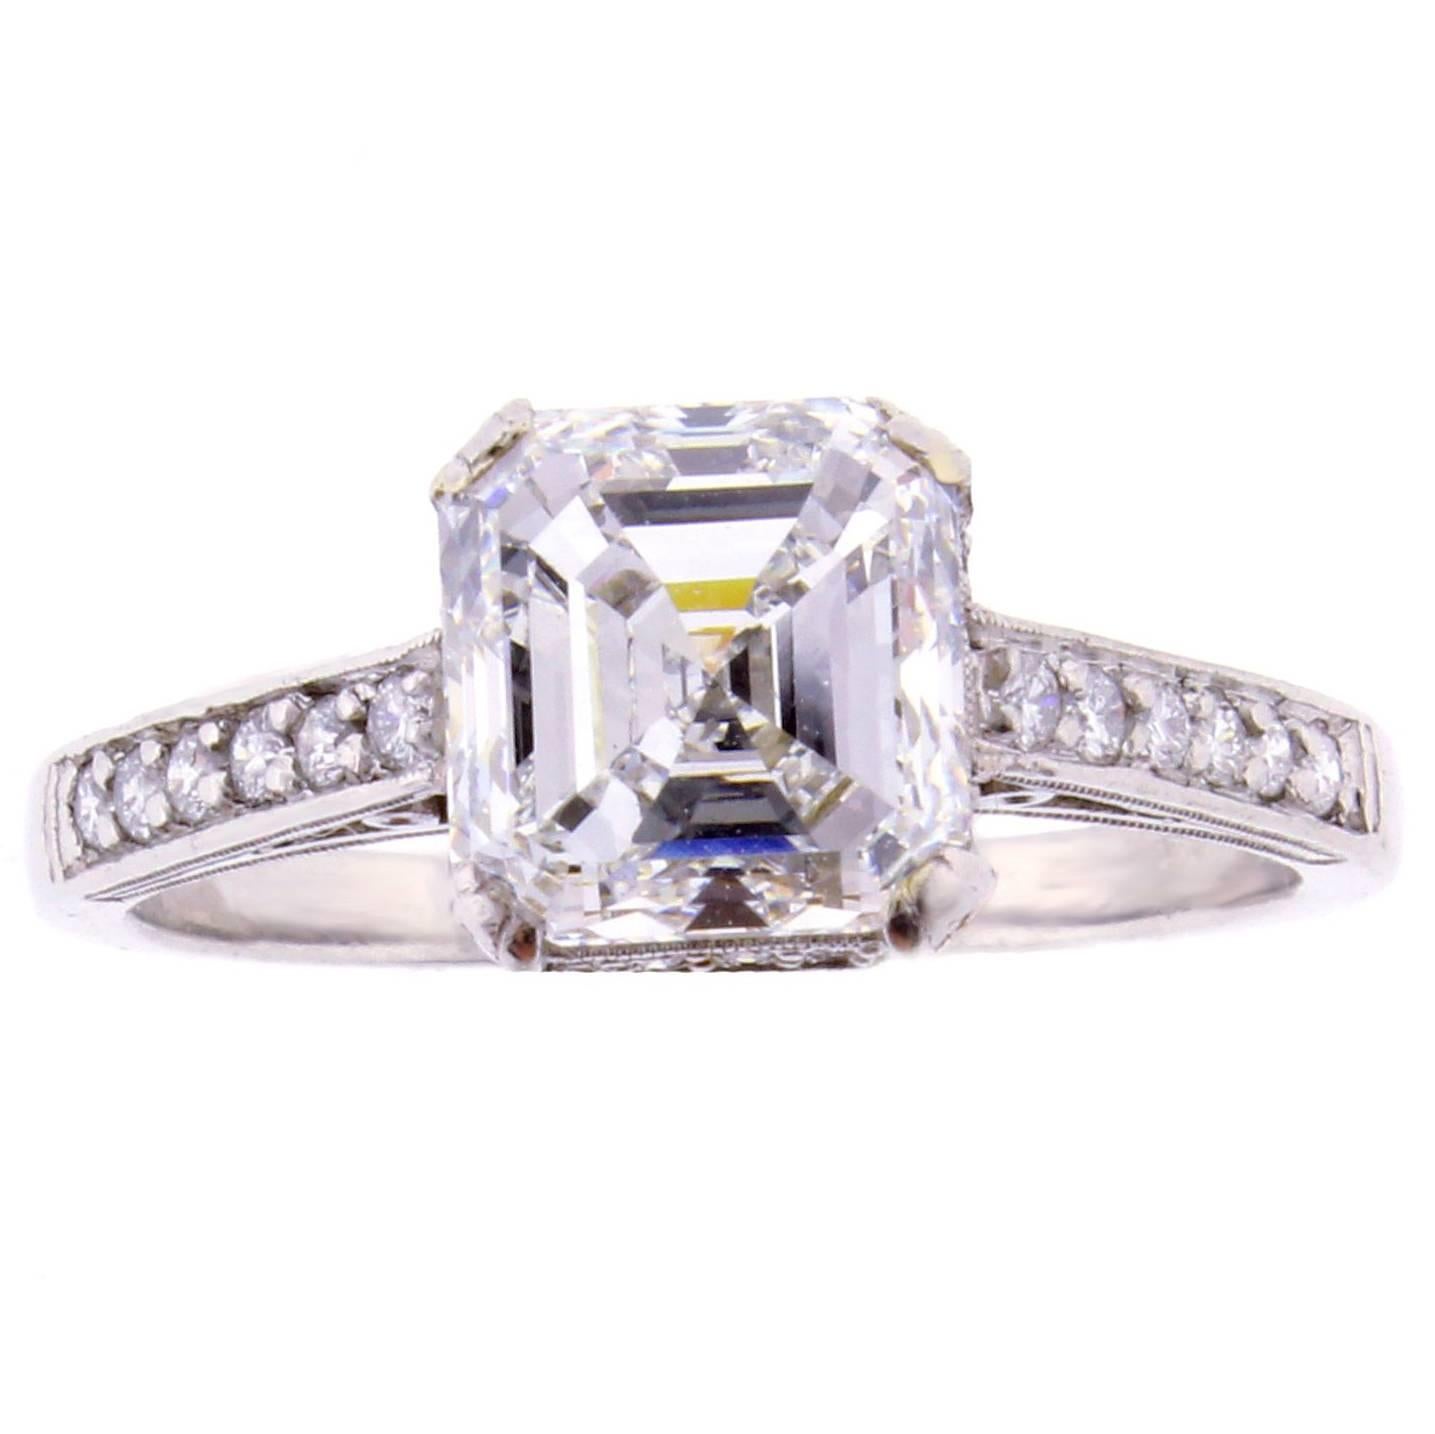 2.51 carat G.I.A. Asscher Cut Diamond platinum Solitaire Ring